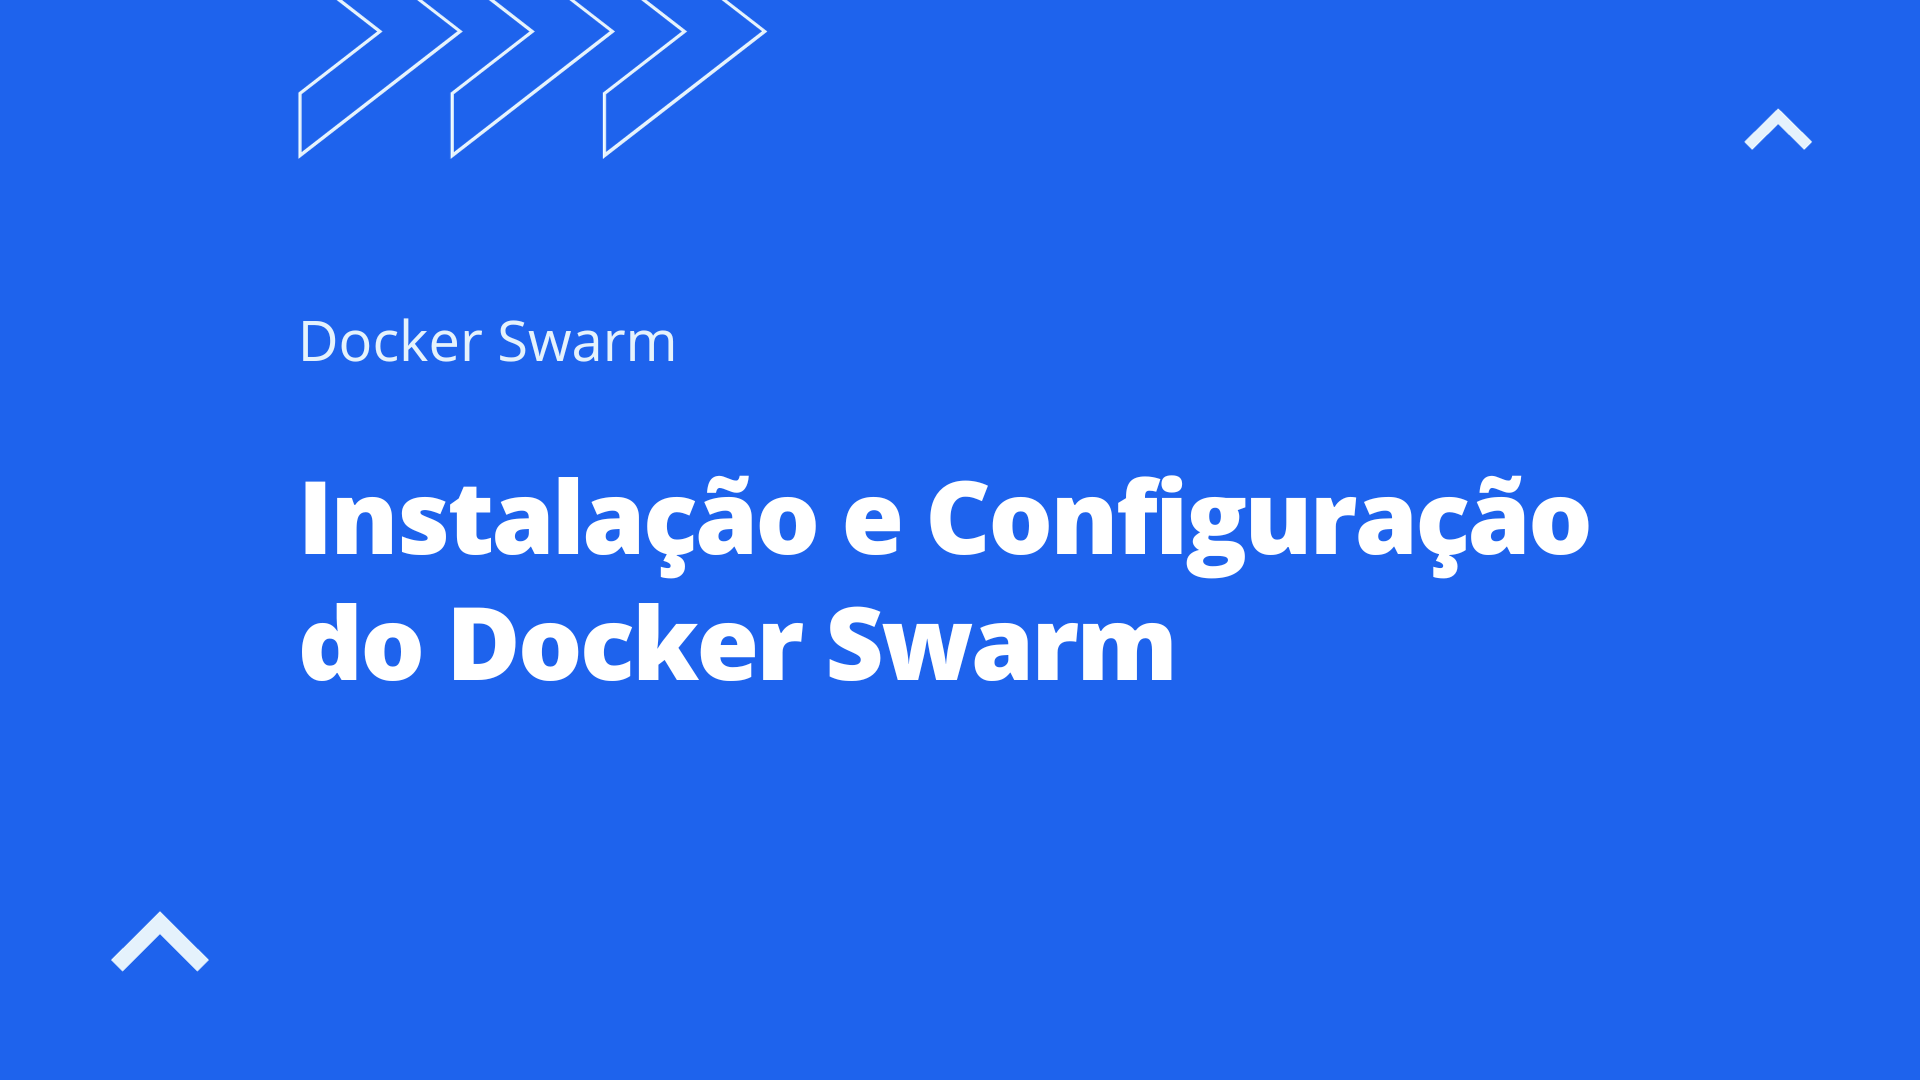 Instalação e Configuração do Cluster Docker Swarm